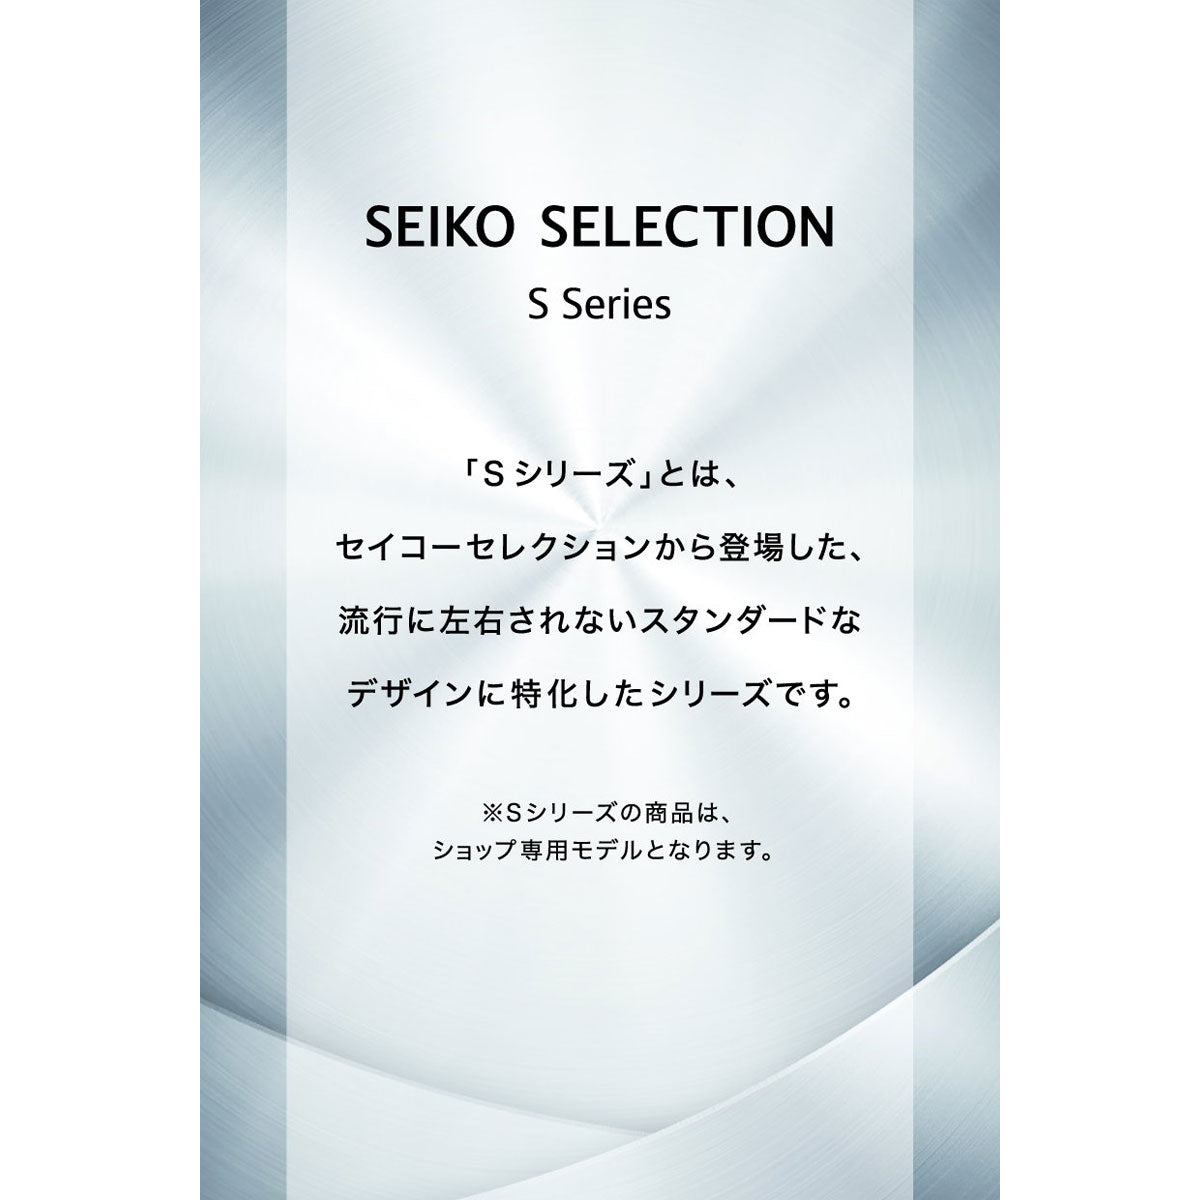 セイコー セレクション SEIKO SELECTION Sシリーズ 桜田千尋 コラボ ショップ専用 流通限定モデル 電波 ソーラー 電波時計 腕時計 レディース SWFH123 トノーモデル